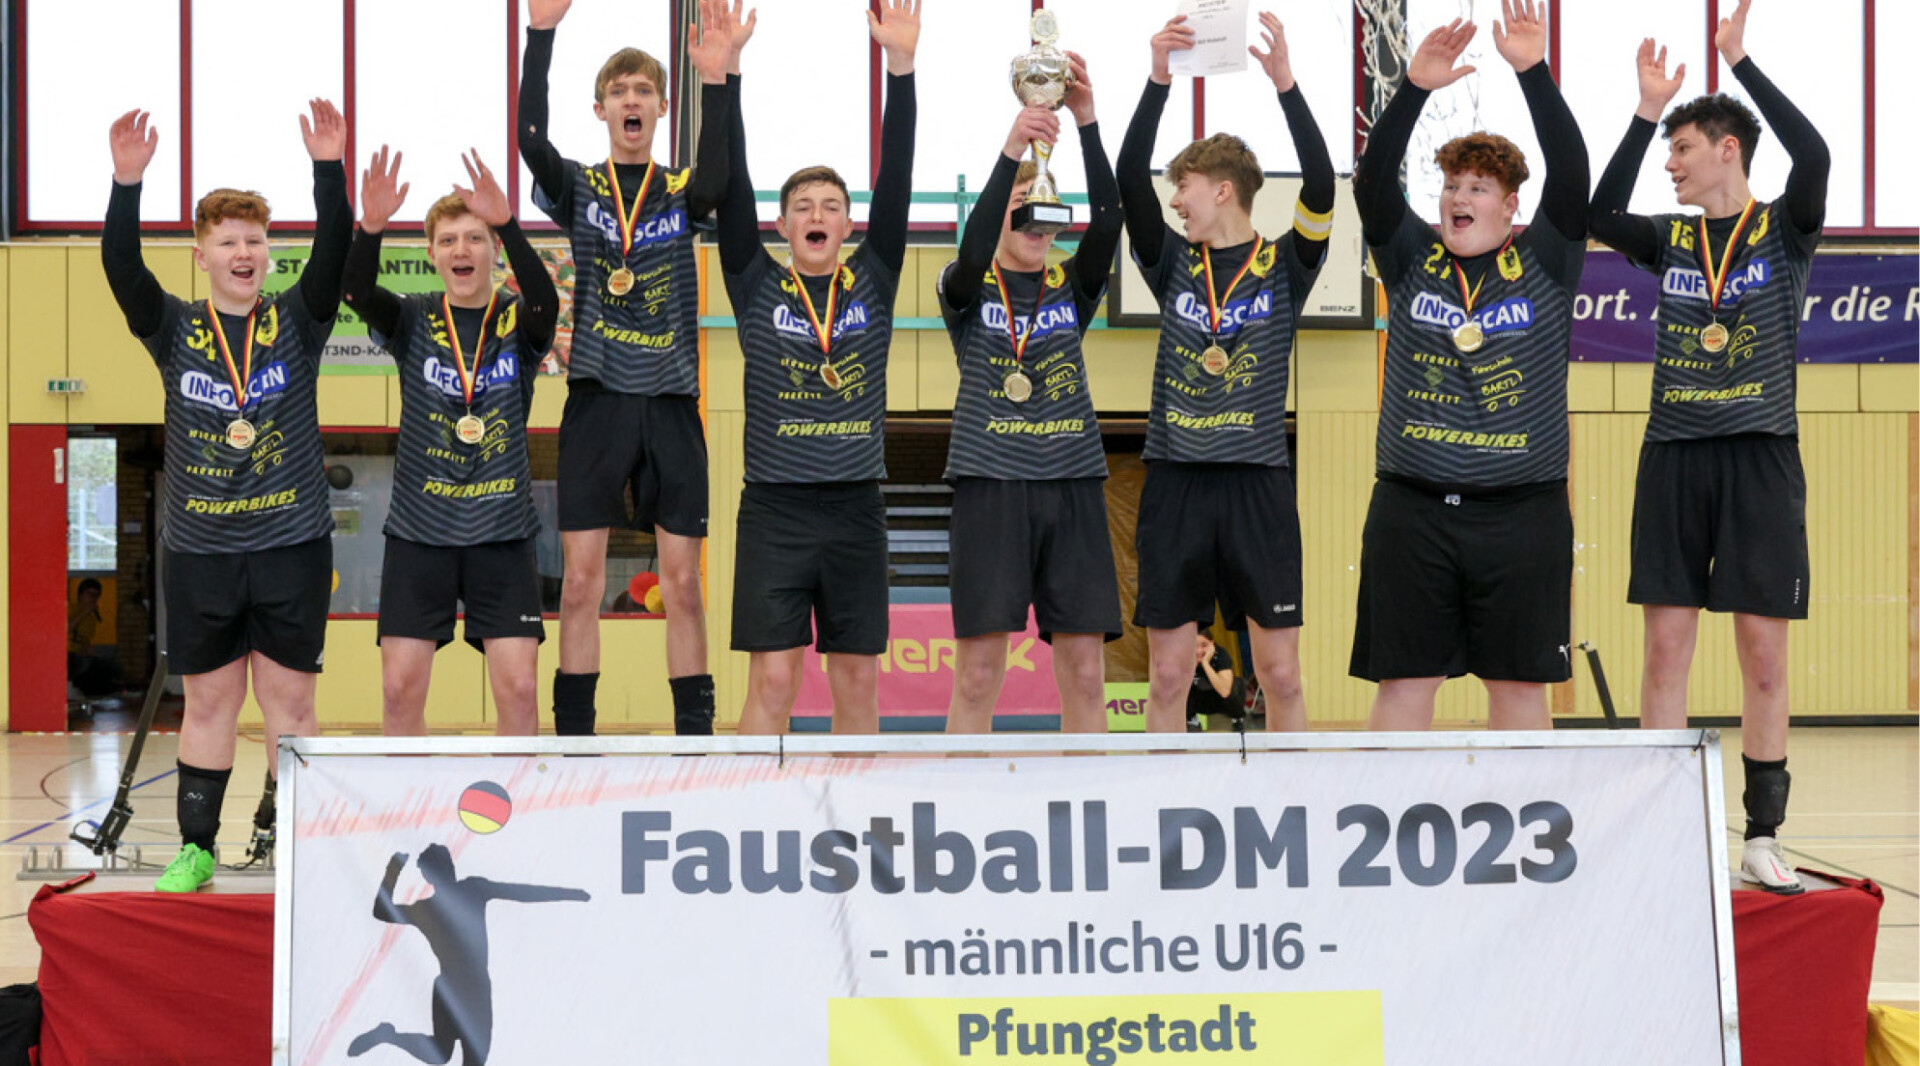 Abschluss der Hallenrunde Waibstadt und Schneverdingen feiern U16-Titel faustball.de